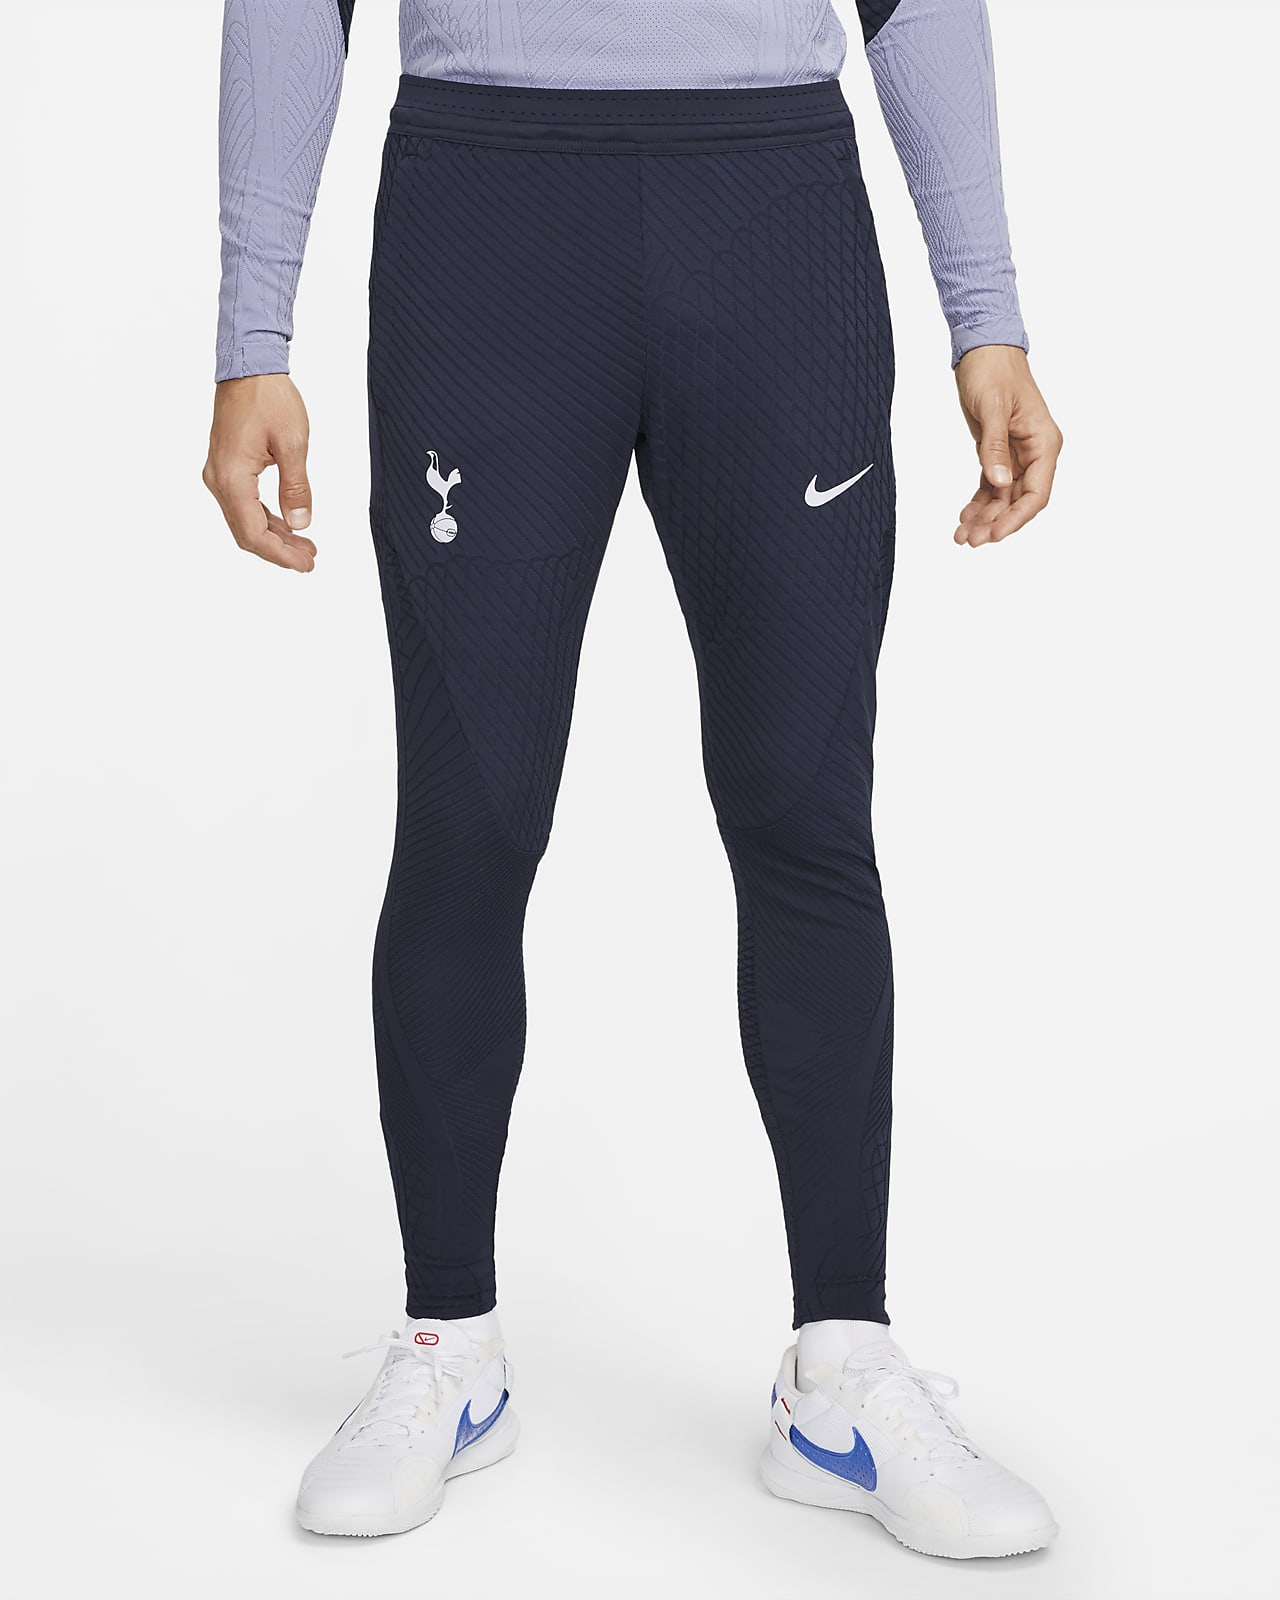 Tottenham Hotspur Strike Elite Men's Nike Dri-FIT ADV Knit Football Pants